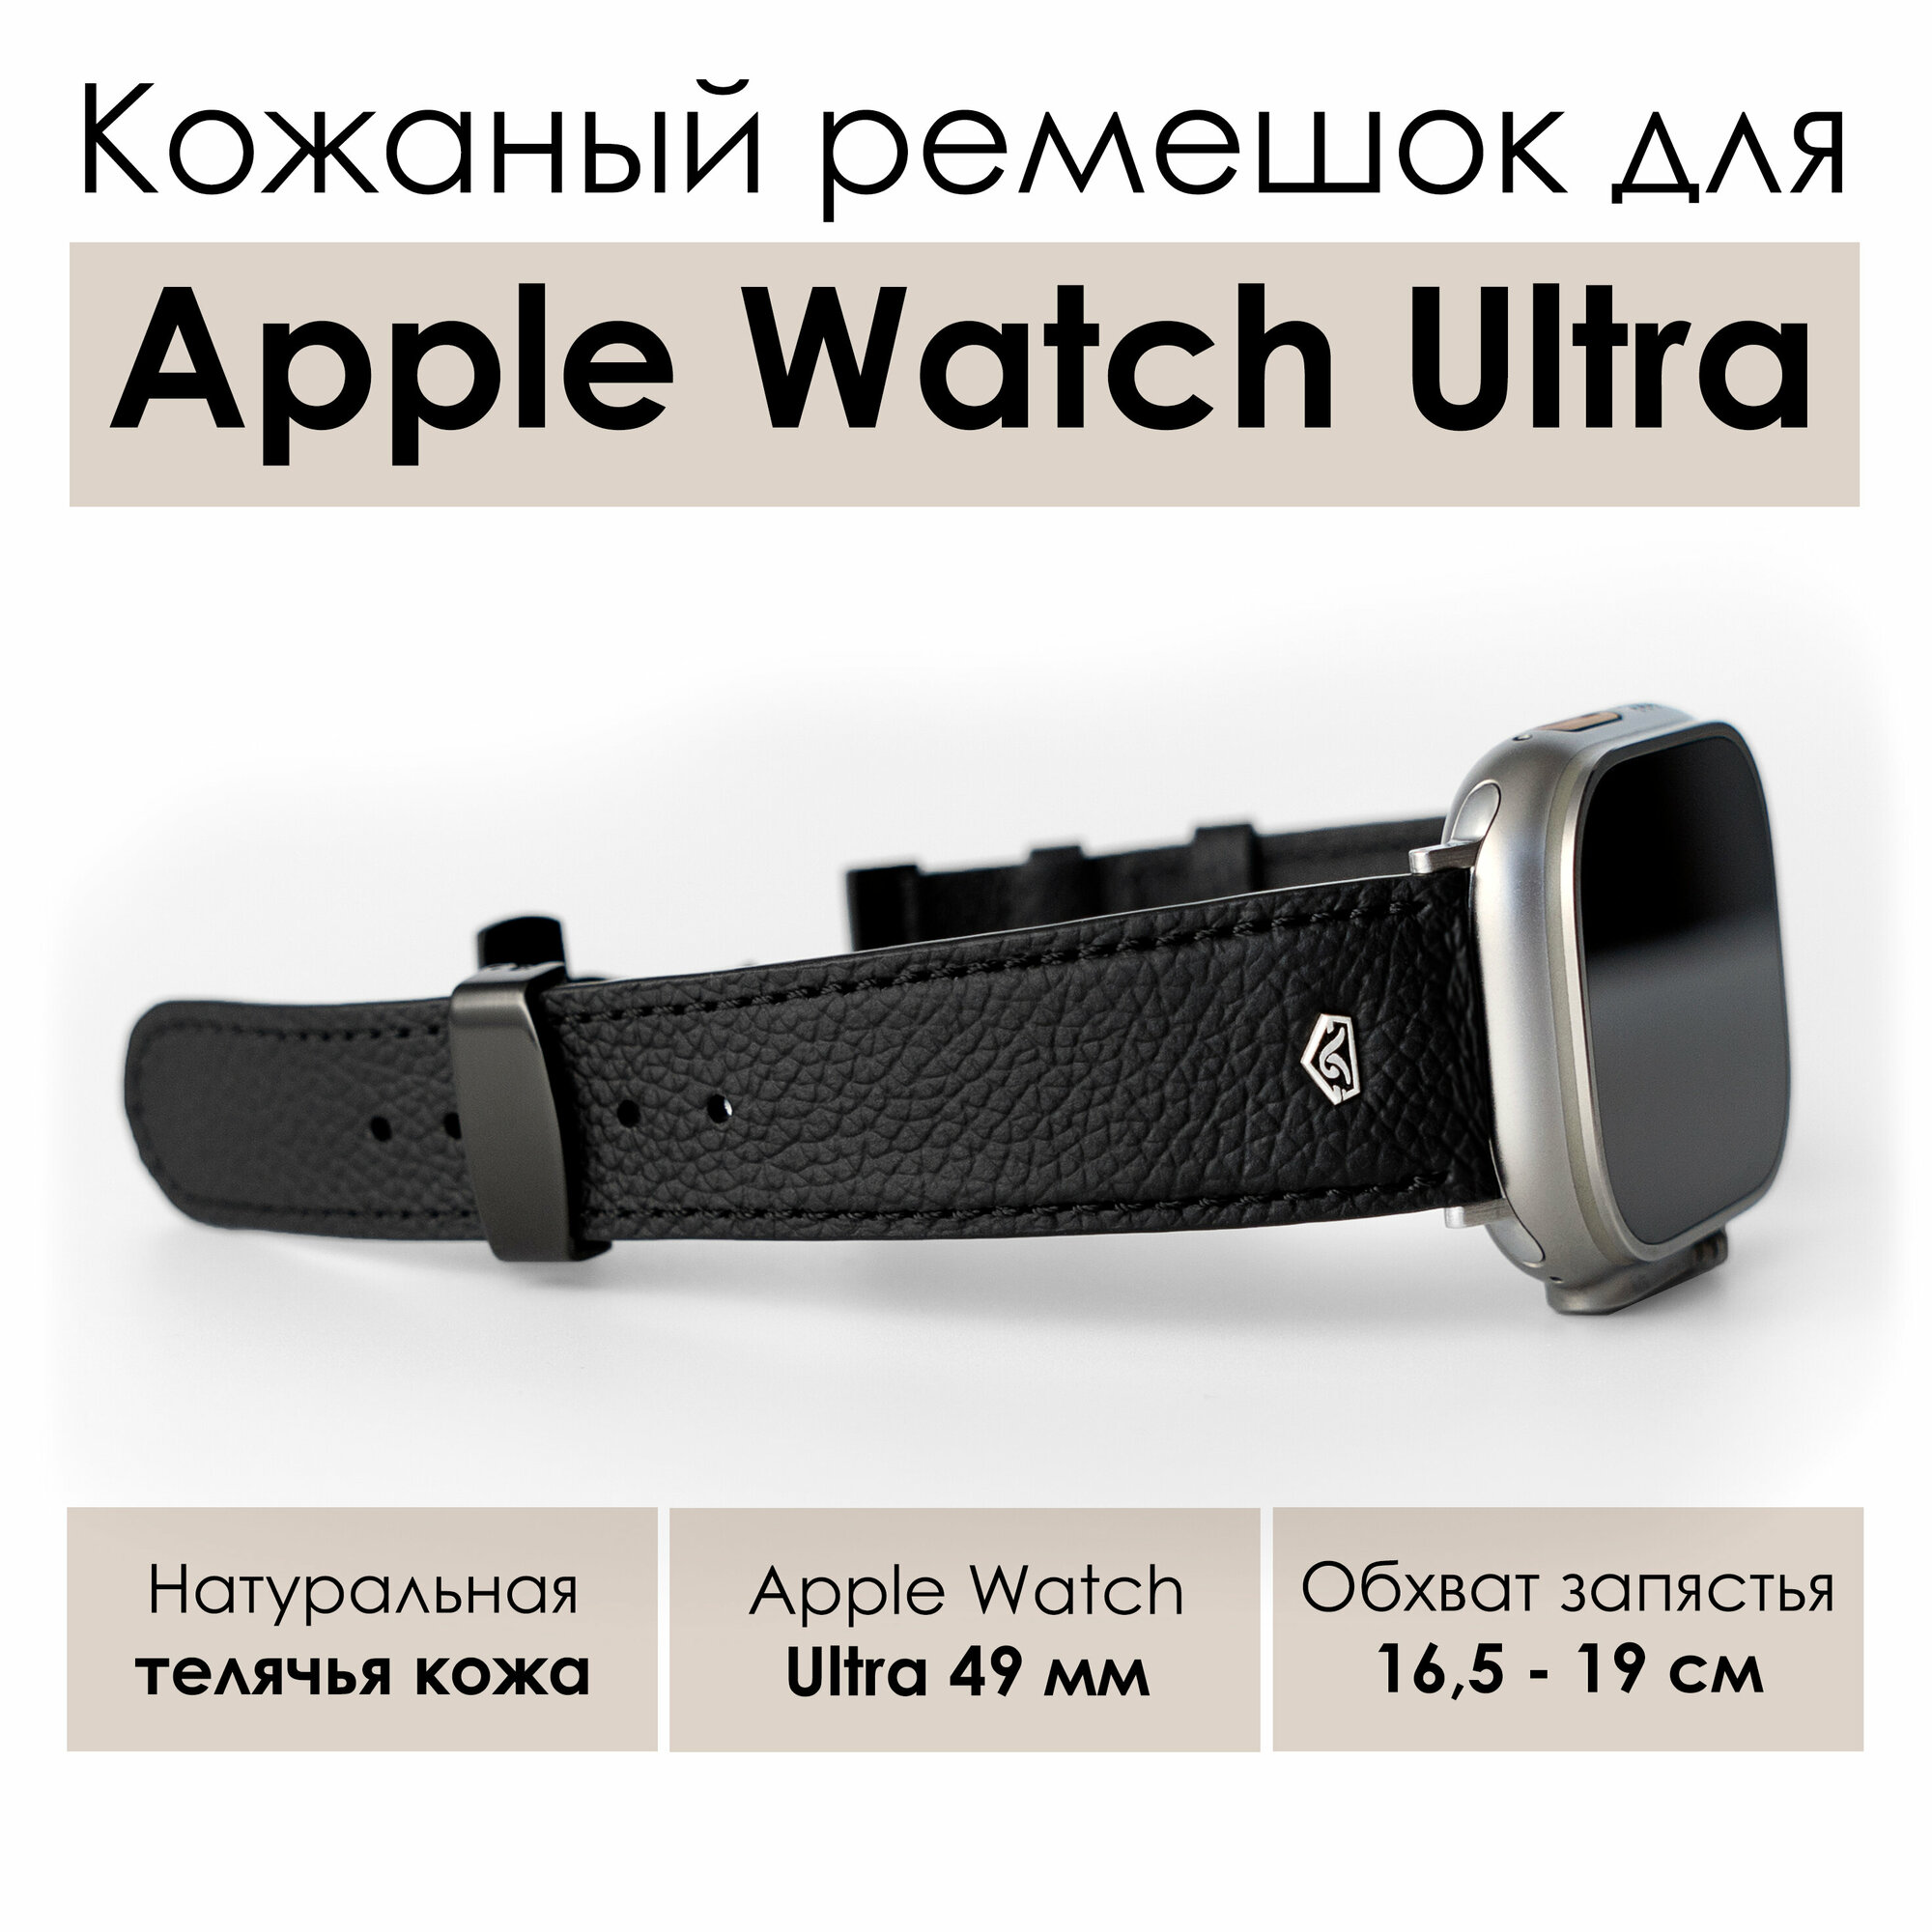 Кожаный ремешок для смарт часов Apple Watch Ultra (Эпл вотч Ультра) 49 мм, натуральная кожа, черный